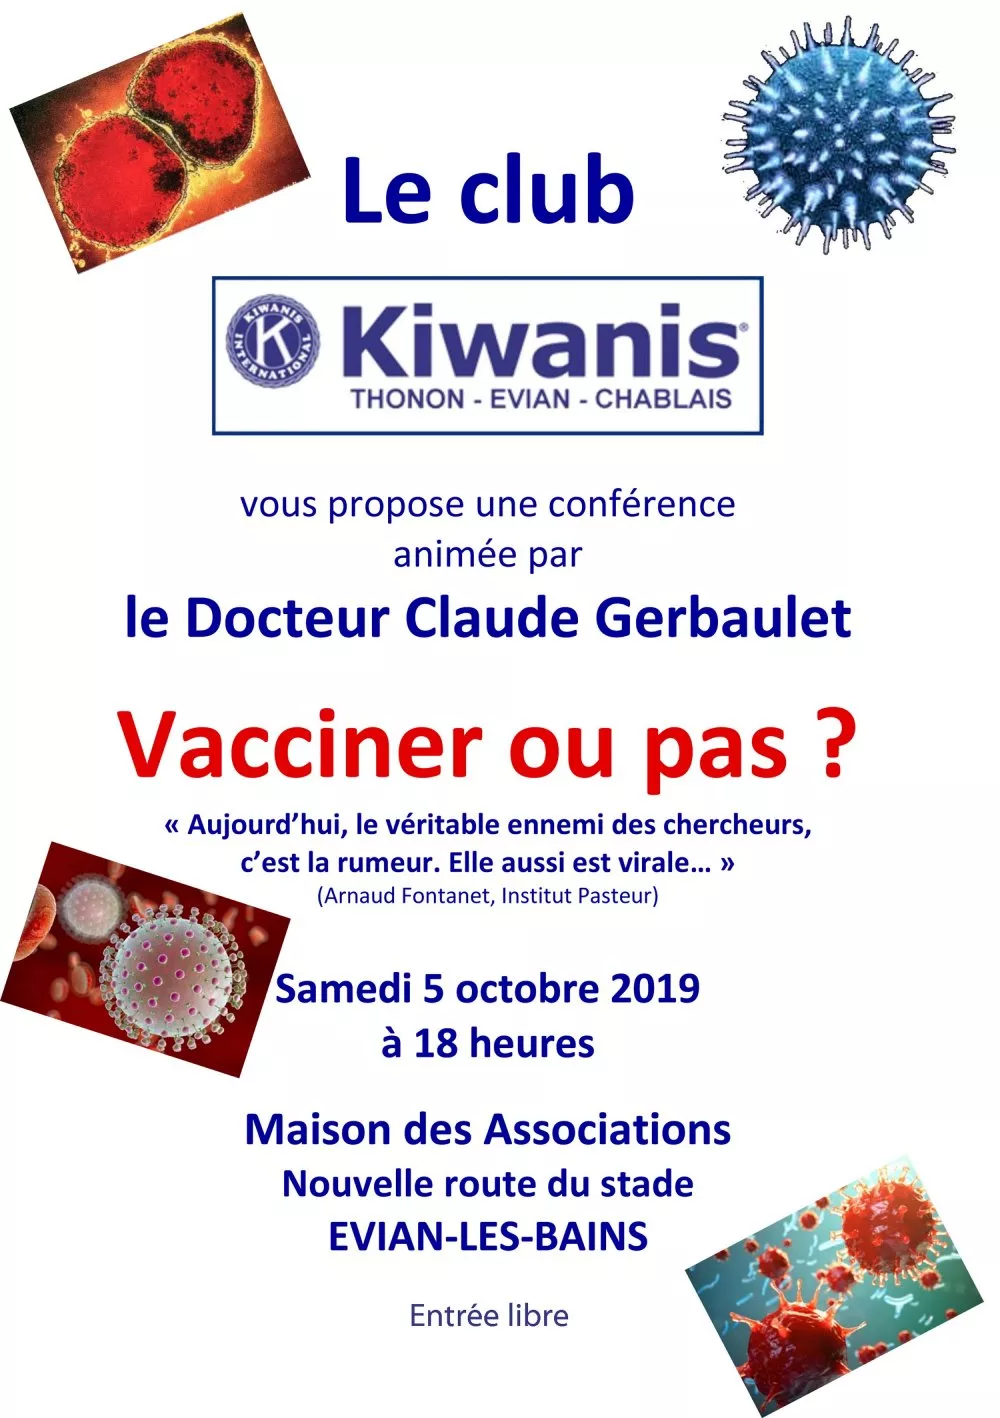 Evian - conférence - "Vacciner ou pas ?"